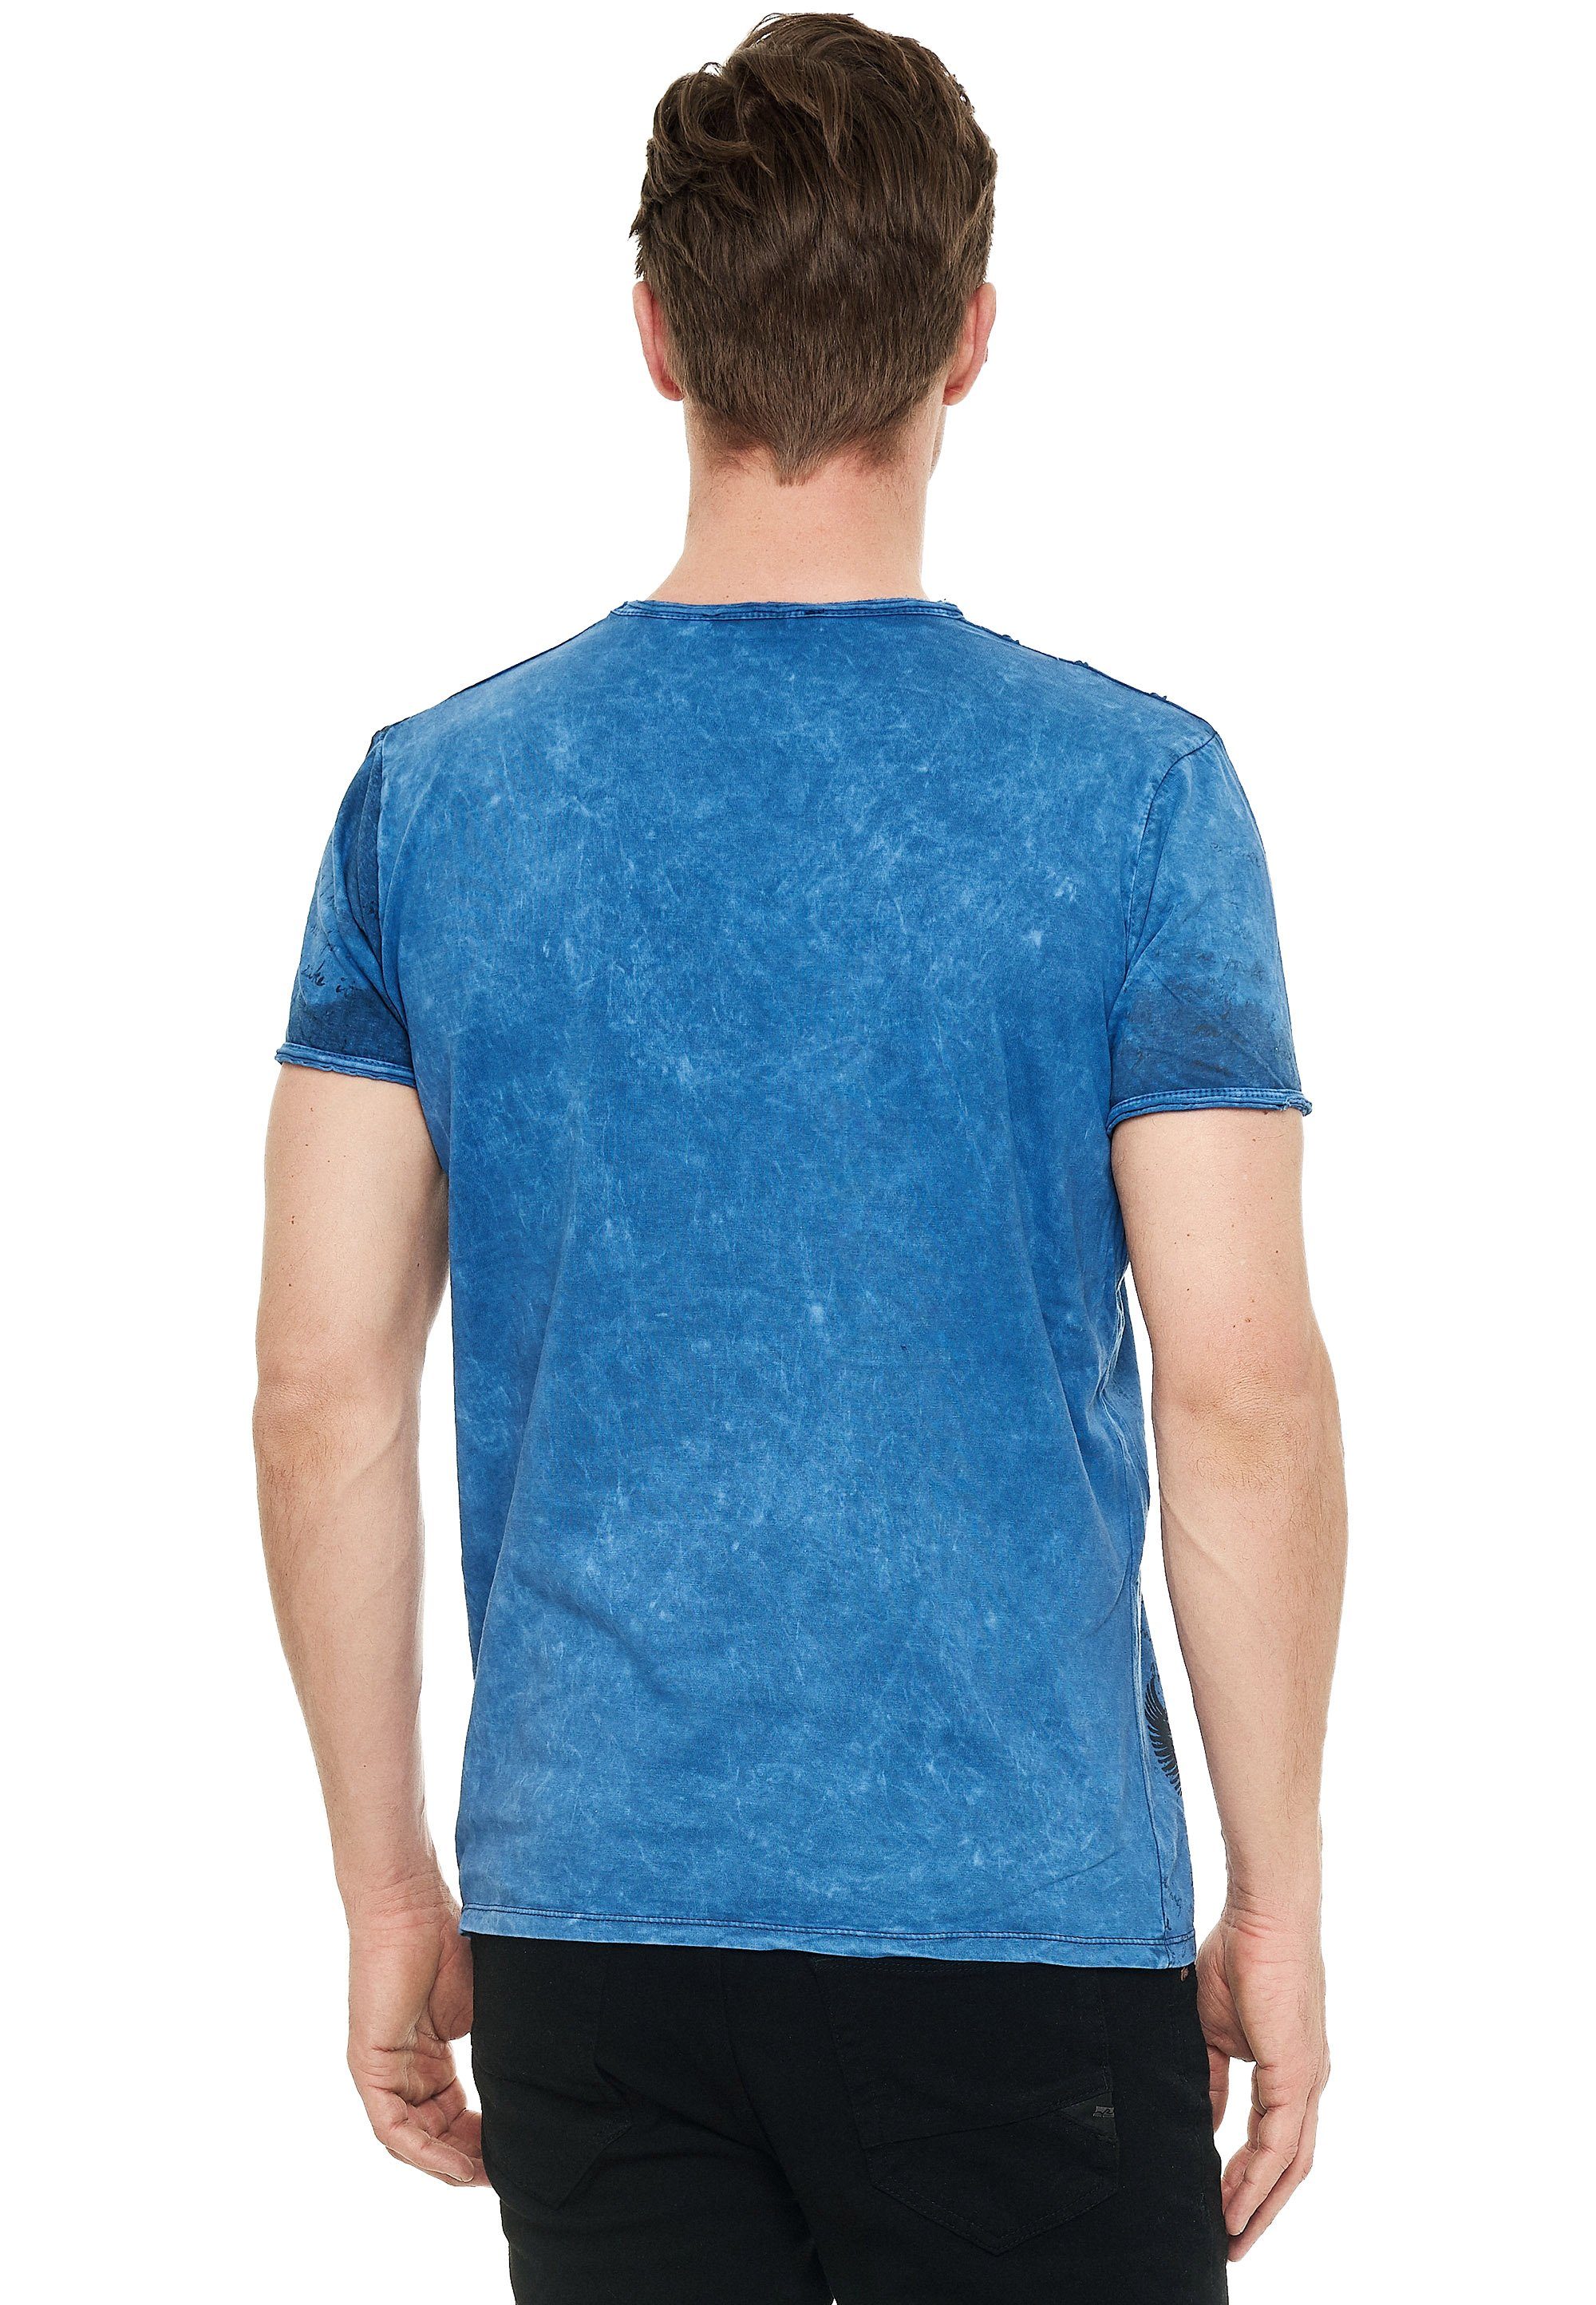 Rusty Neal T-Shirt Print blau mit eindrucksvollem